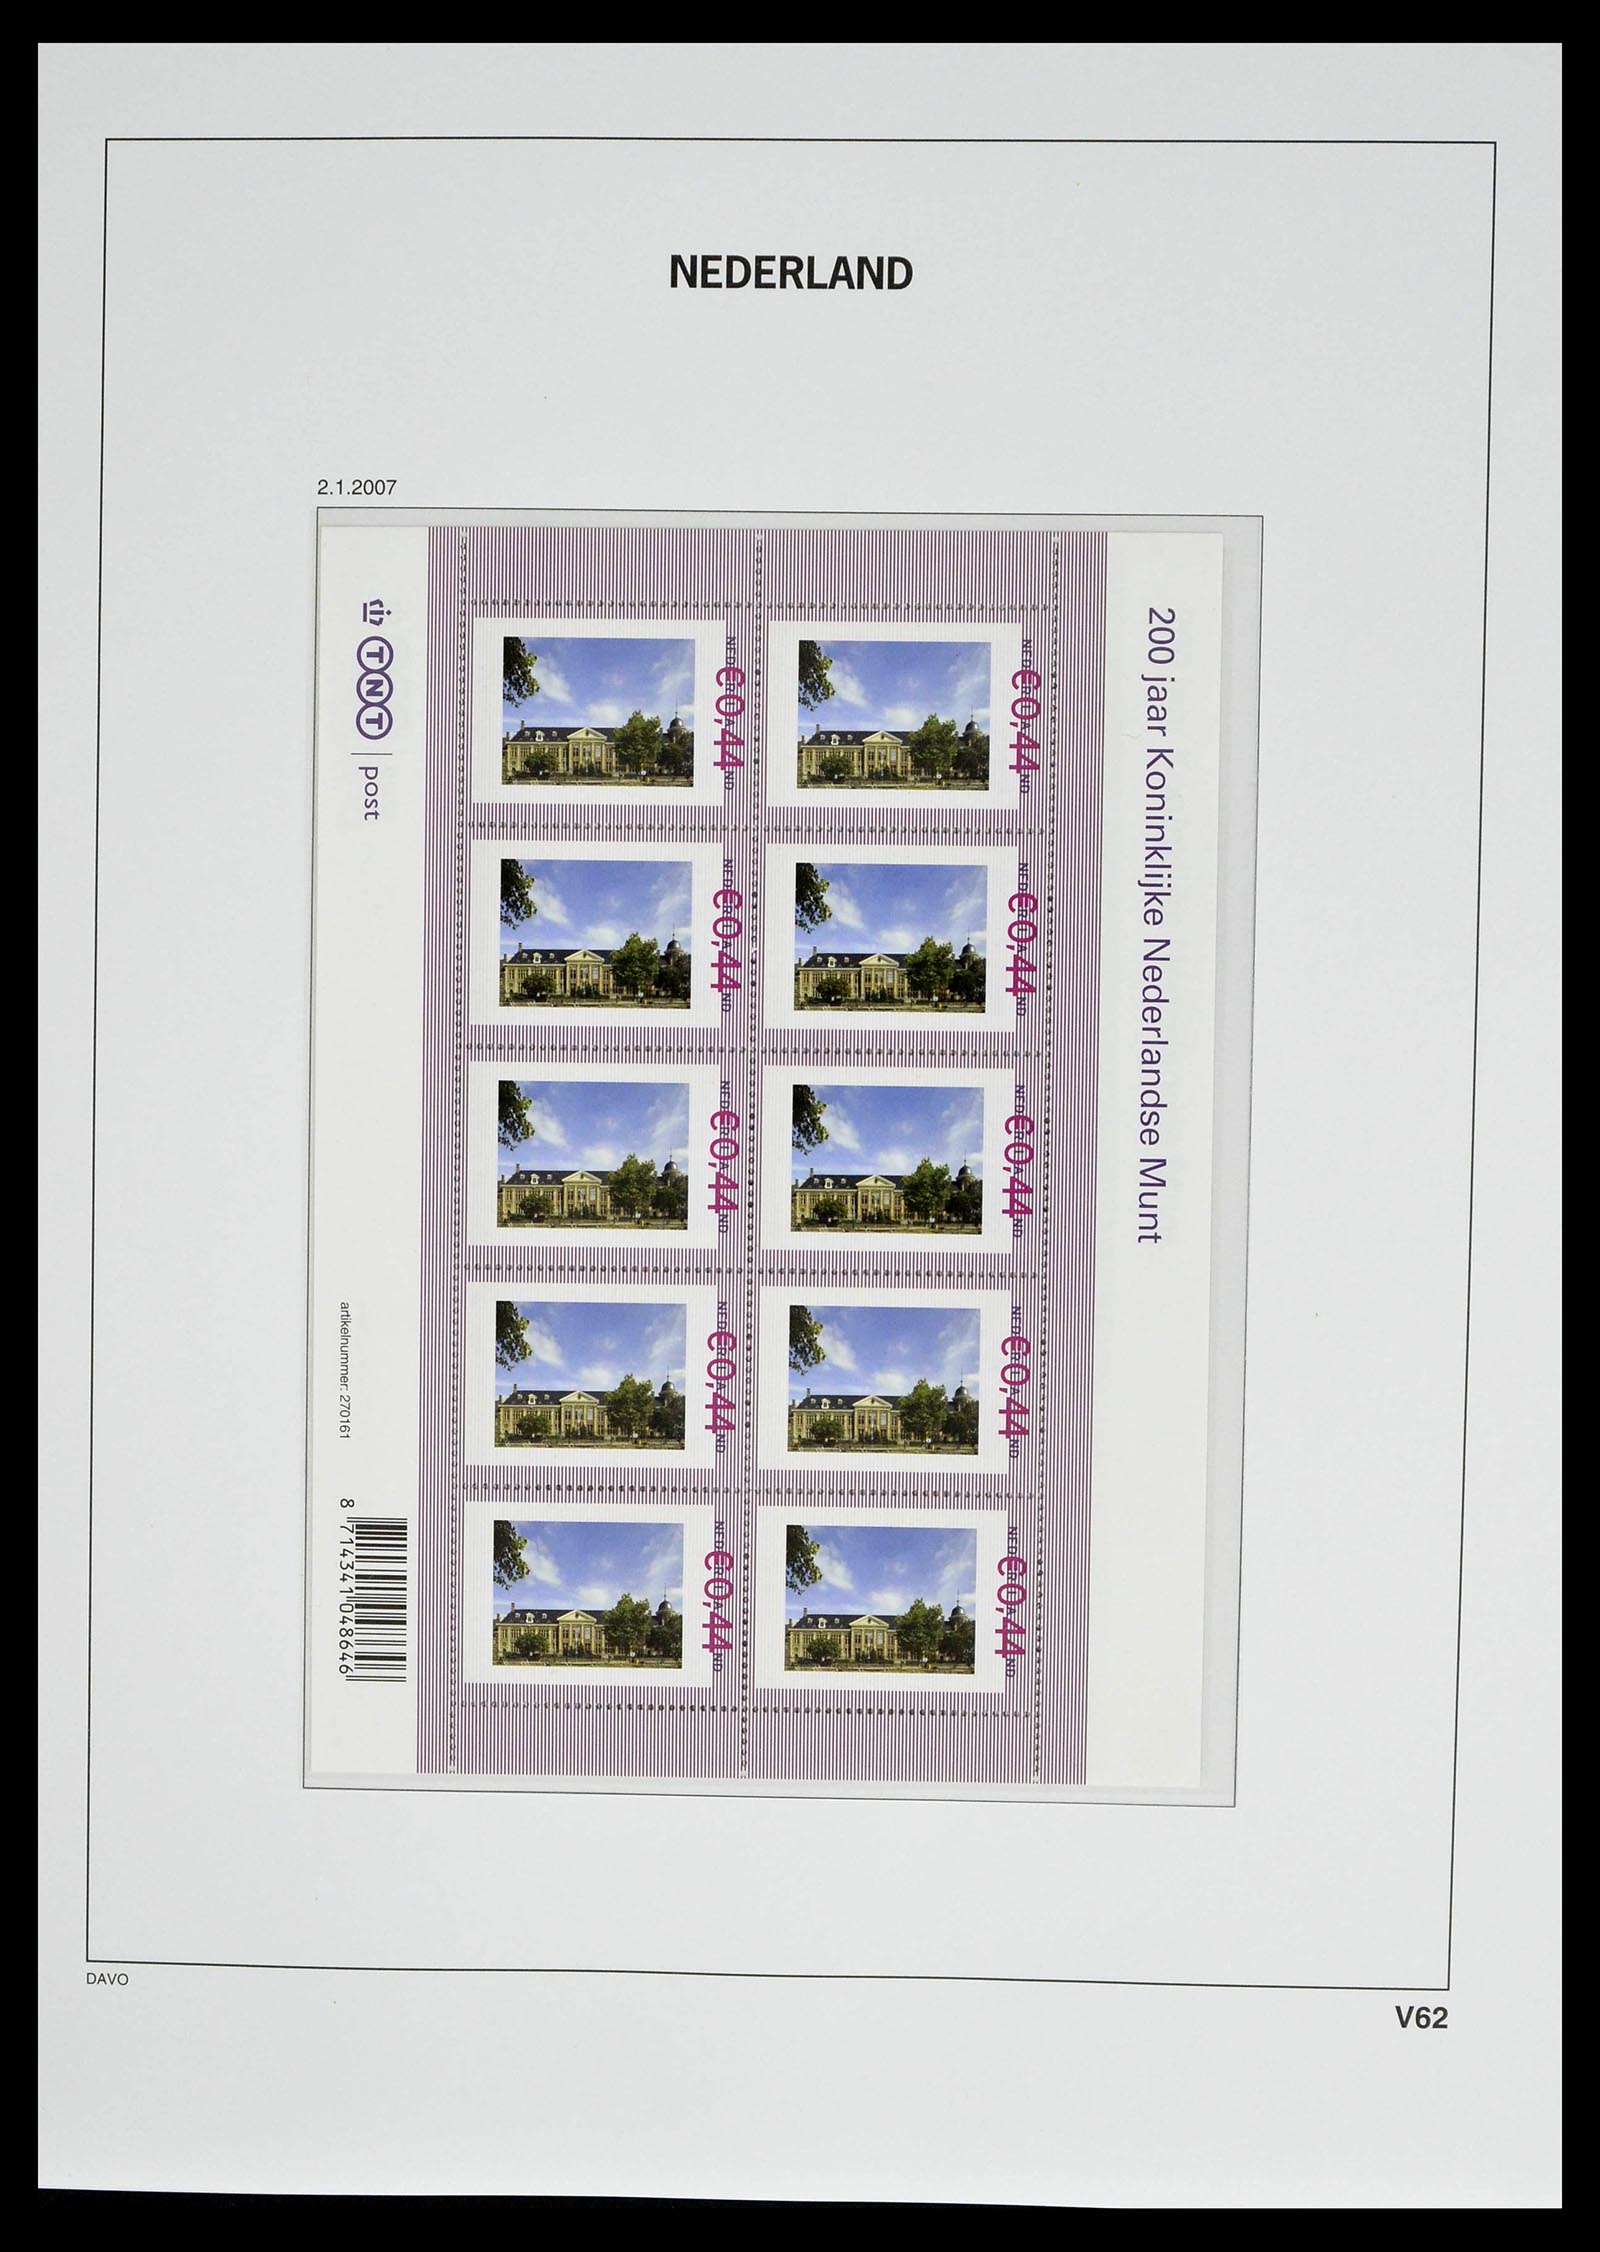 39134 0076 - Stamp collection 39134 Netherlands sheetlets 1992-2019!